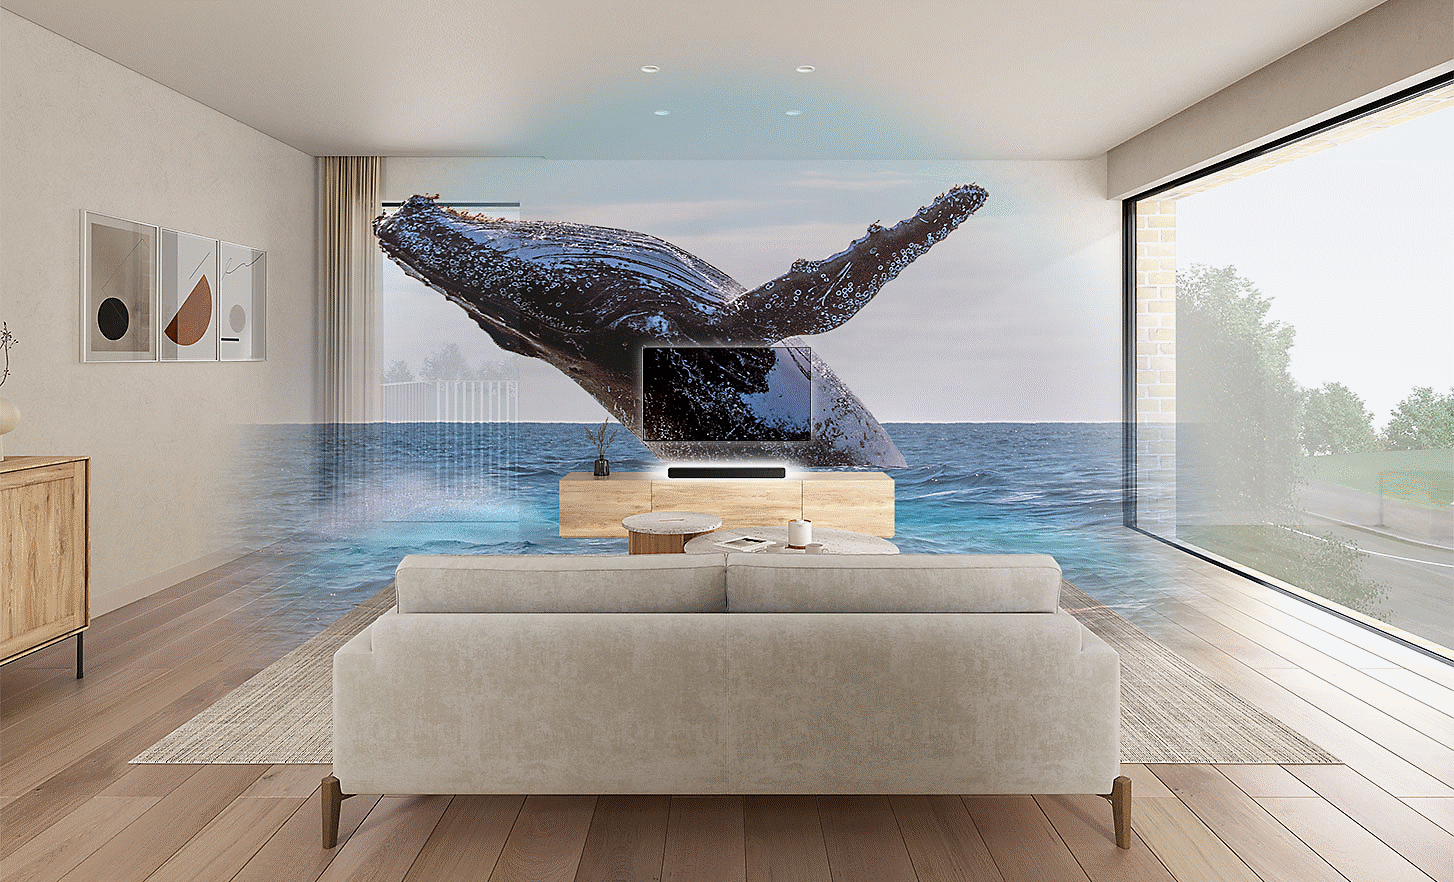 Imagem de uma sala de estar com uma televisão e barra de som HT-S2000 no centro, uma imagem de marca de água de uma baleia na parte superior